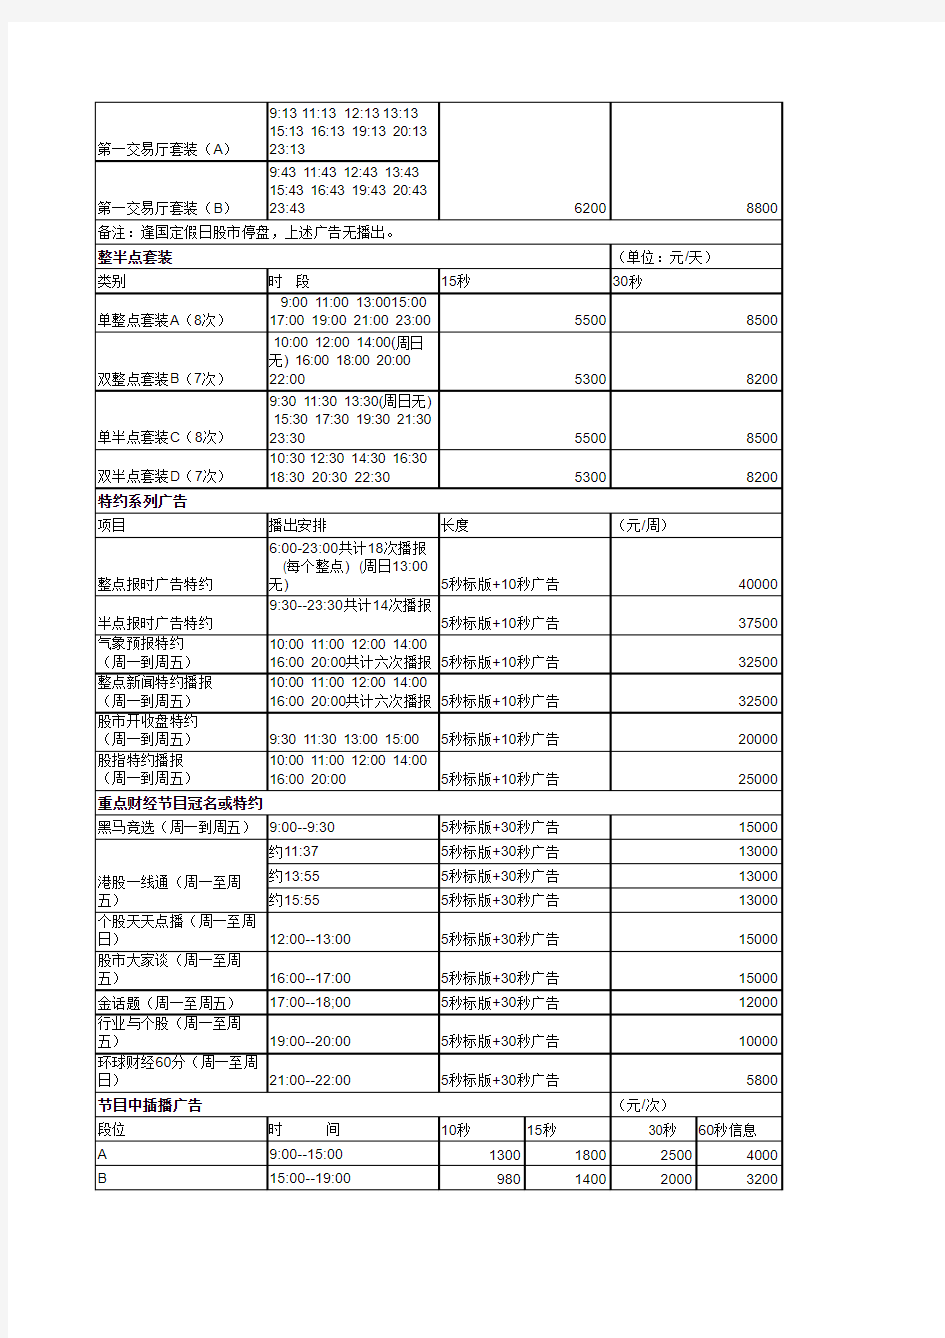 上海人民广播电台第一财经广播(FM97.7)广告价目表